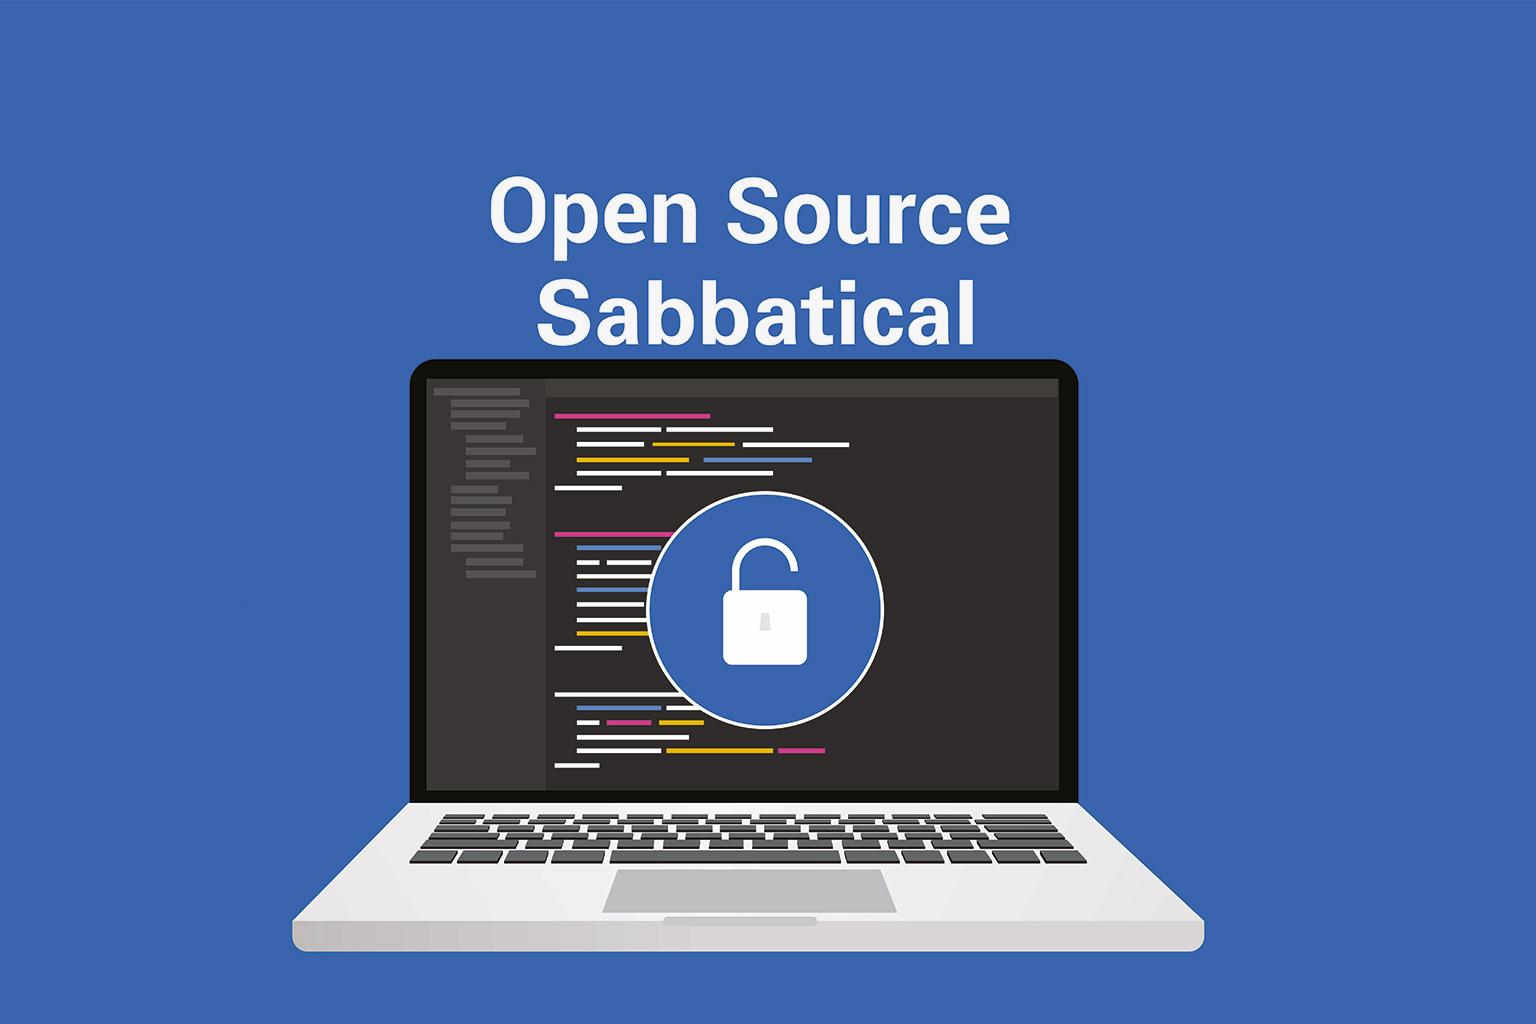 Das Bild zeigt eine Grafik mit einem Laptop. Auf dem Bildschirm sind open source codes und ein Icon mit einem geöffneten Schloss zu sehen. Über dem laptop die Überschrift Open Source Sabbatical.